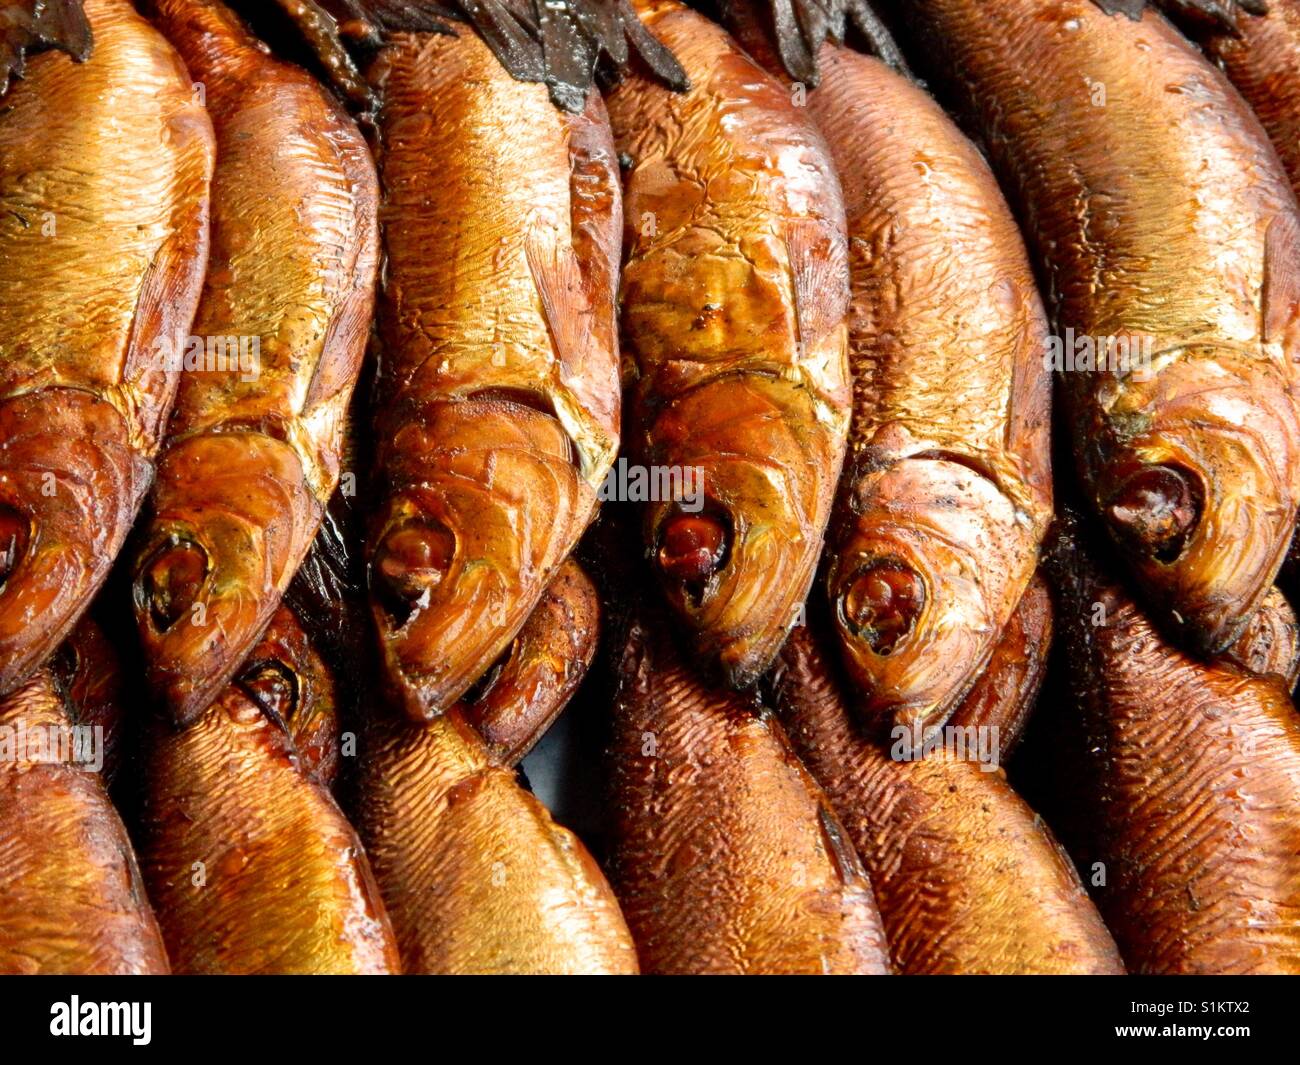 Smoked herring Stock Photo